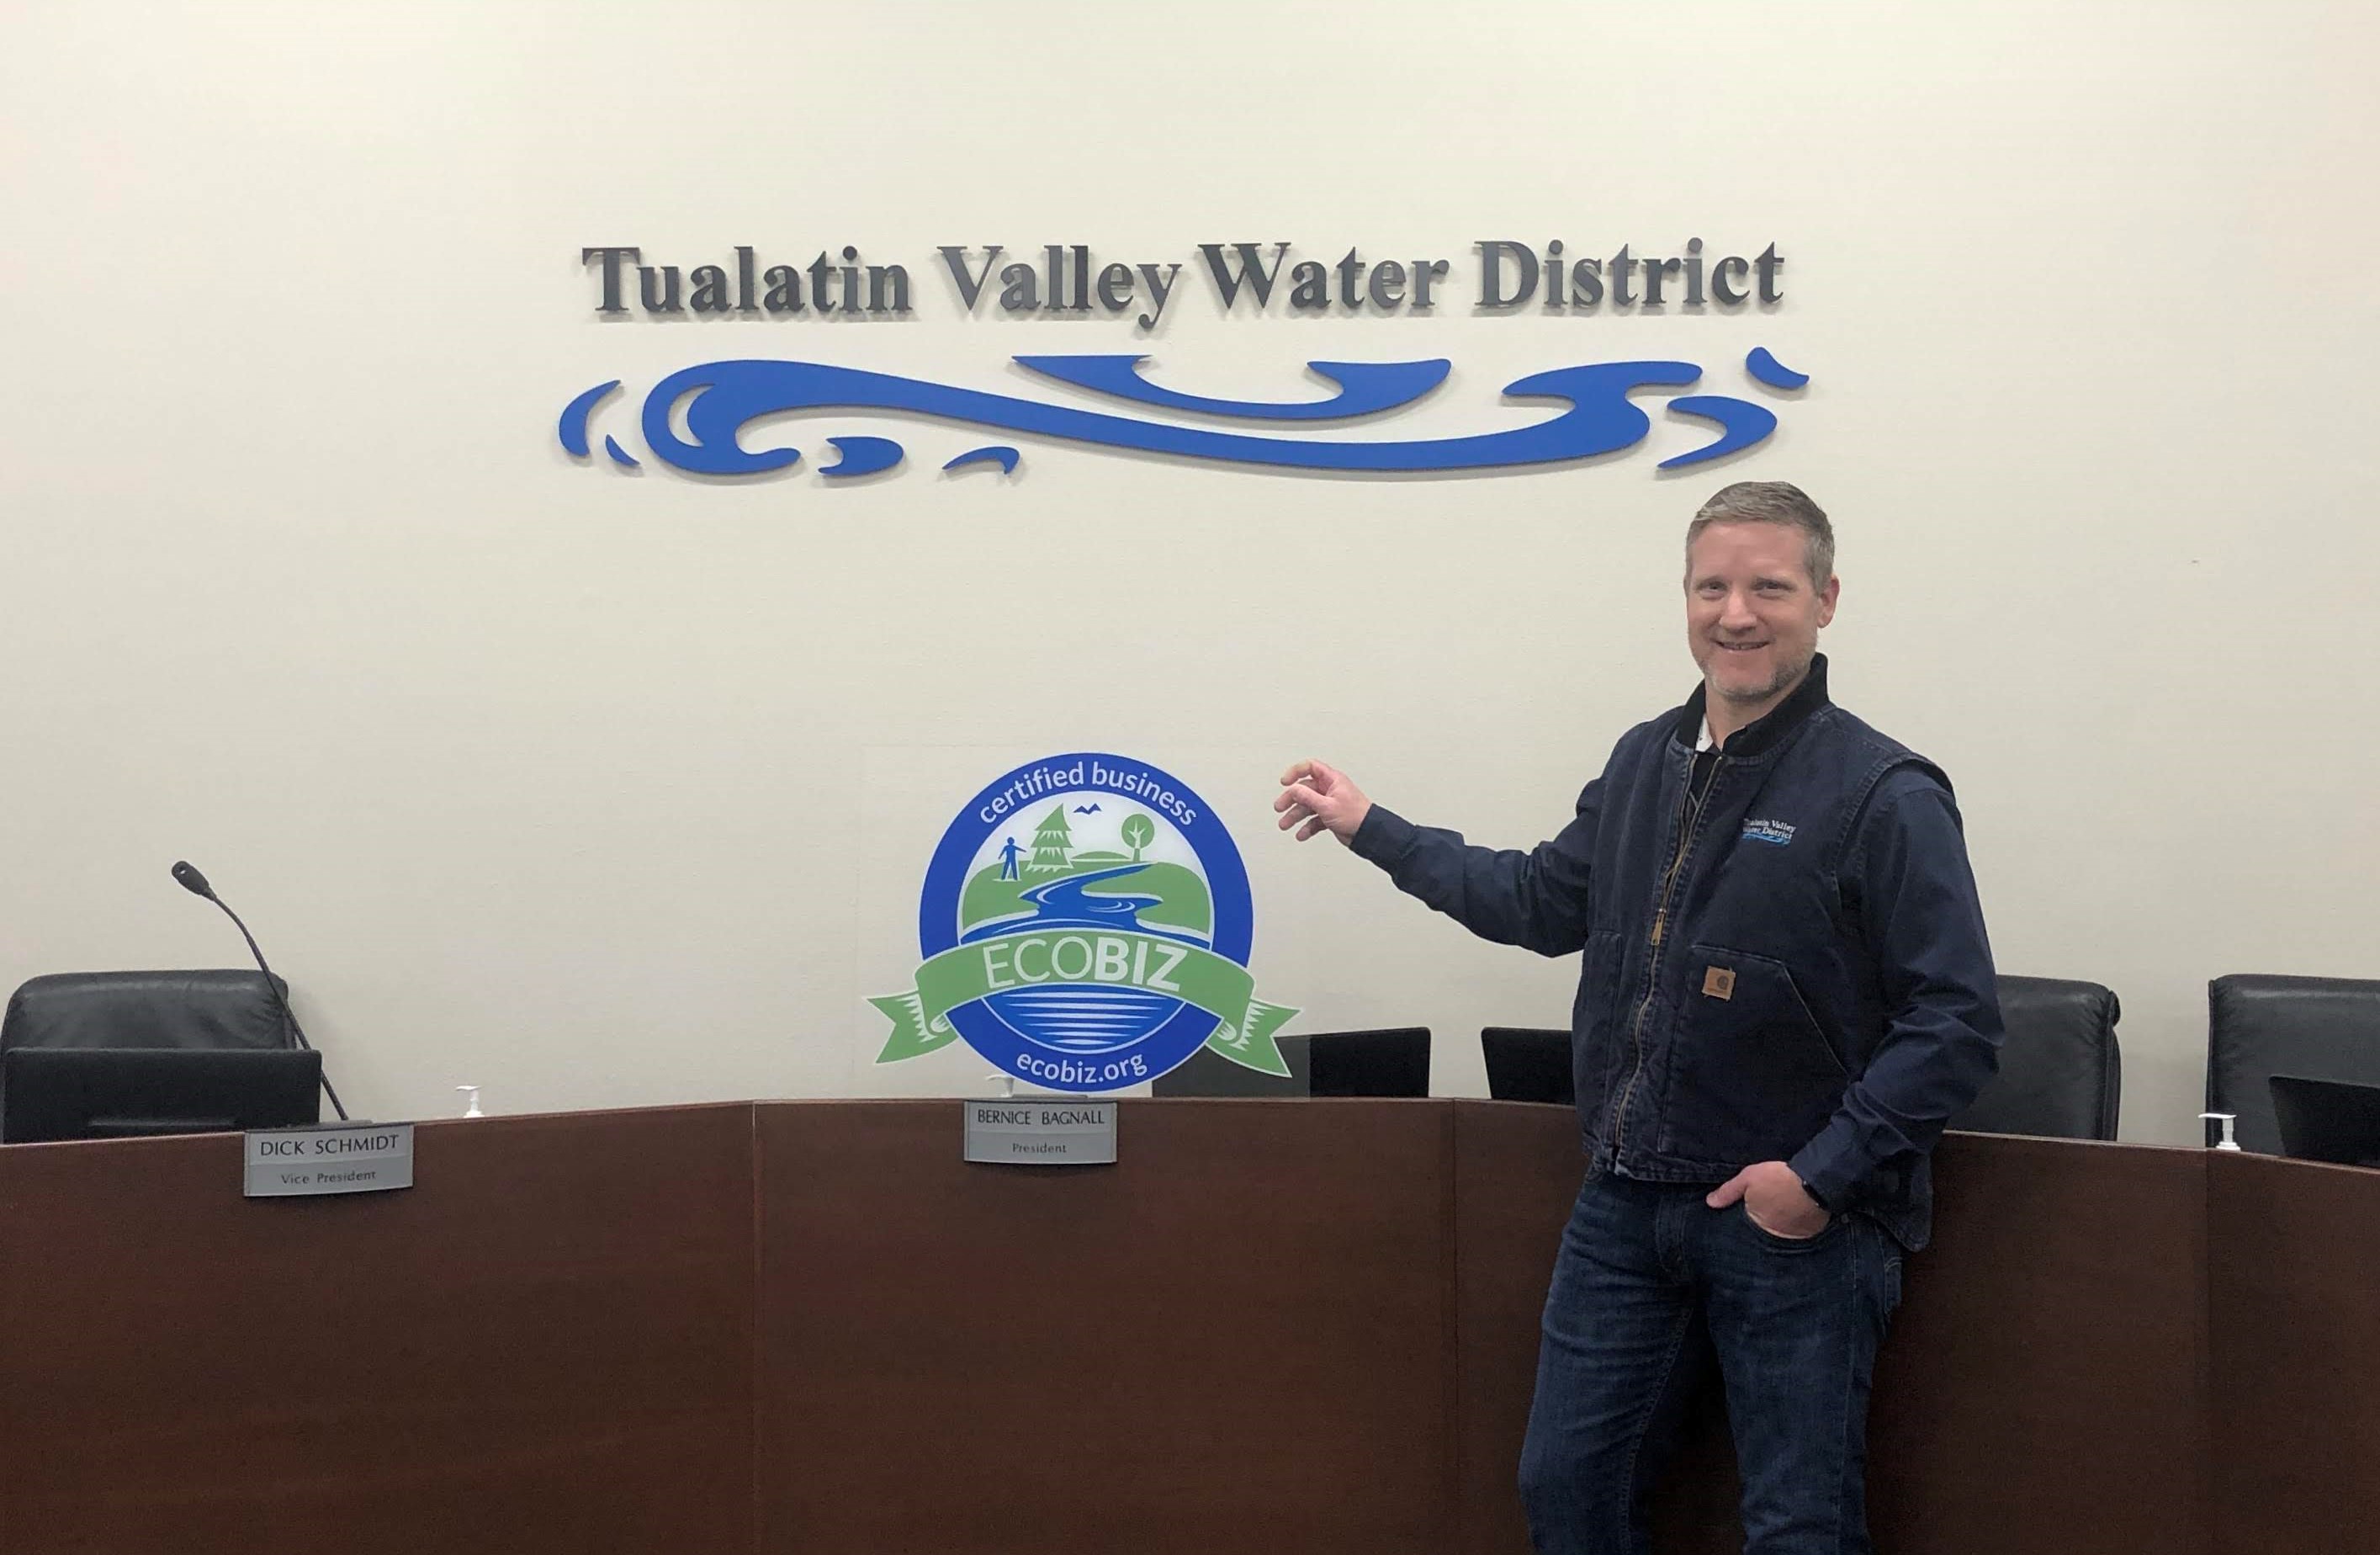 Tualatin Valley Water District Fleet – EcoBiz Certified